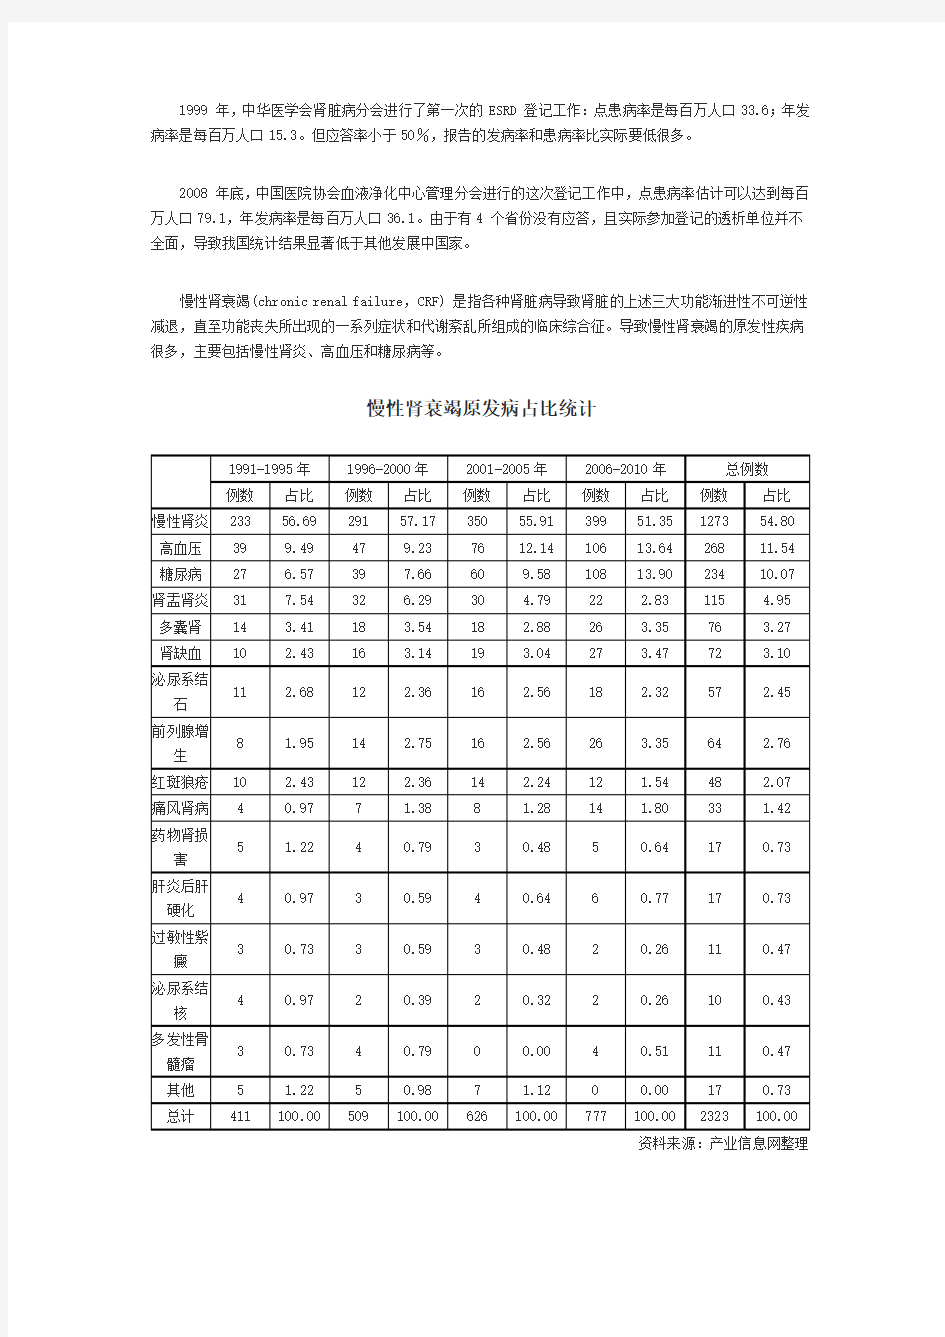 中国慢性肾脏病患病率分析及血液透析